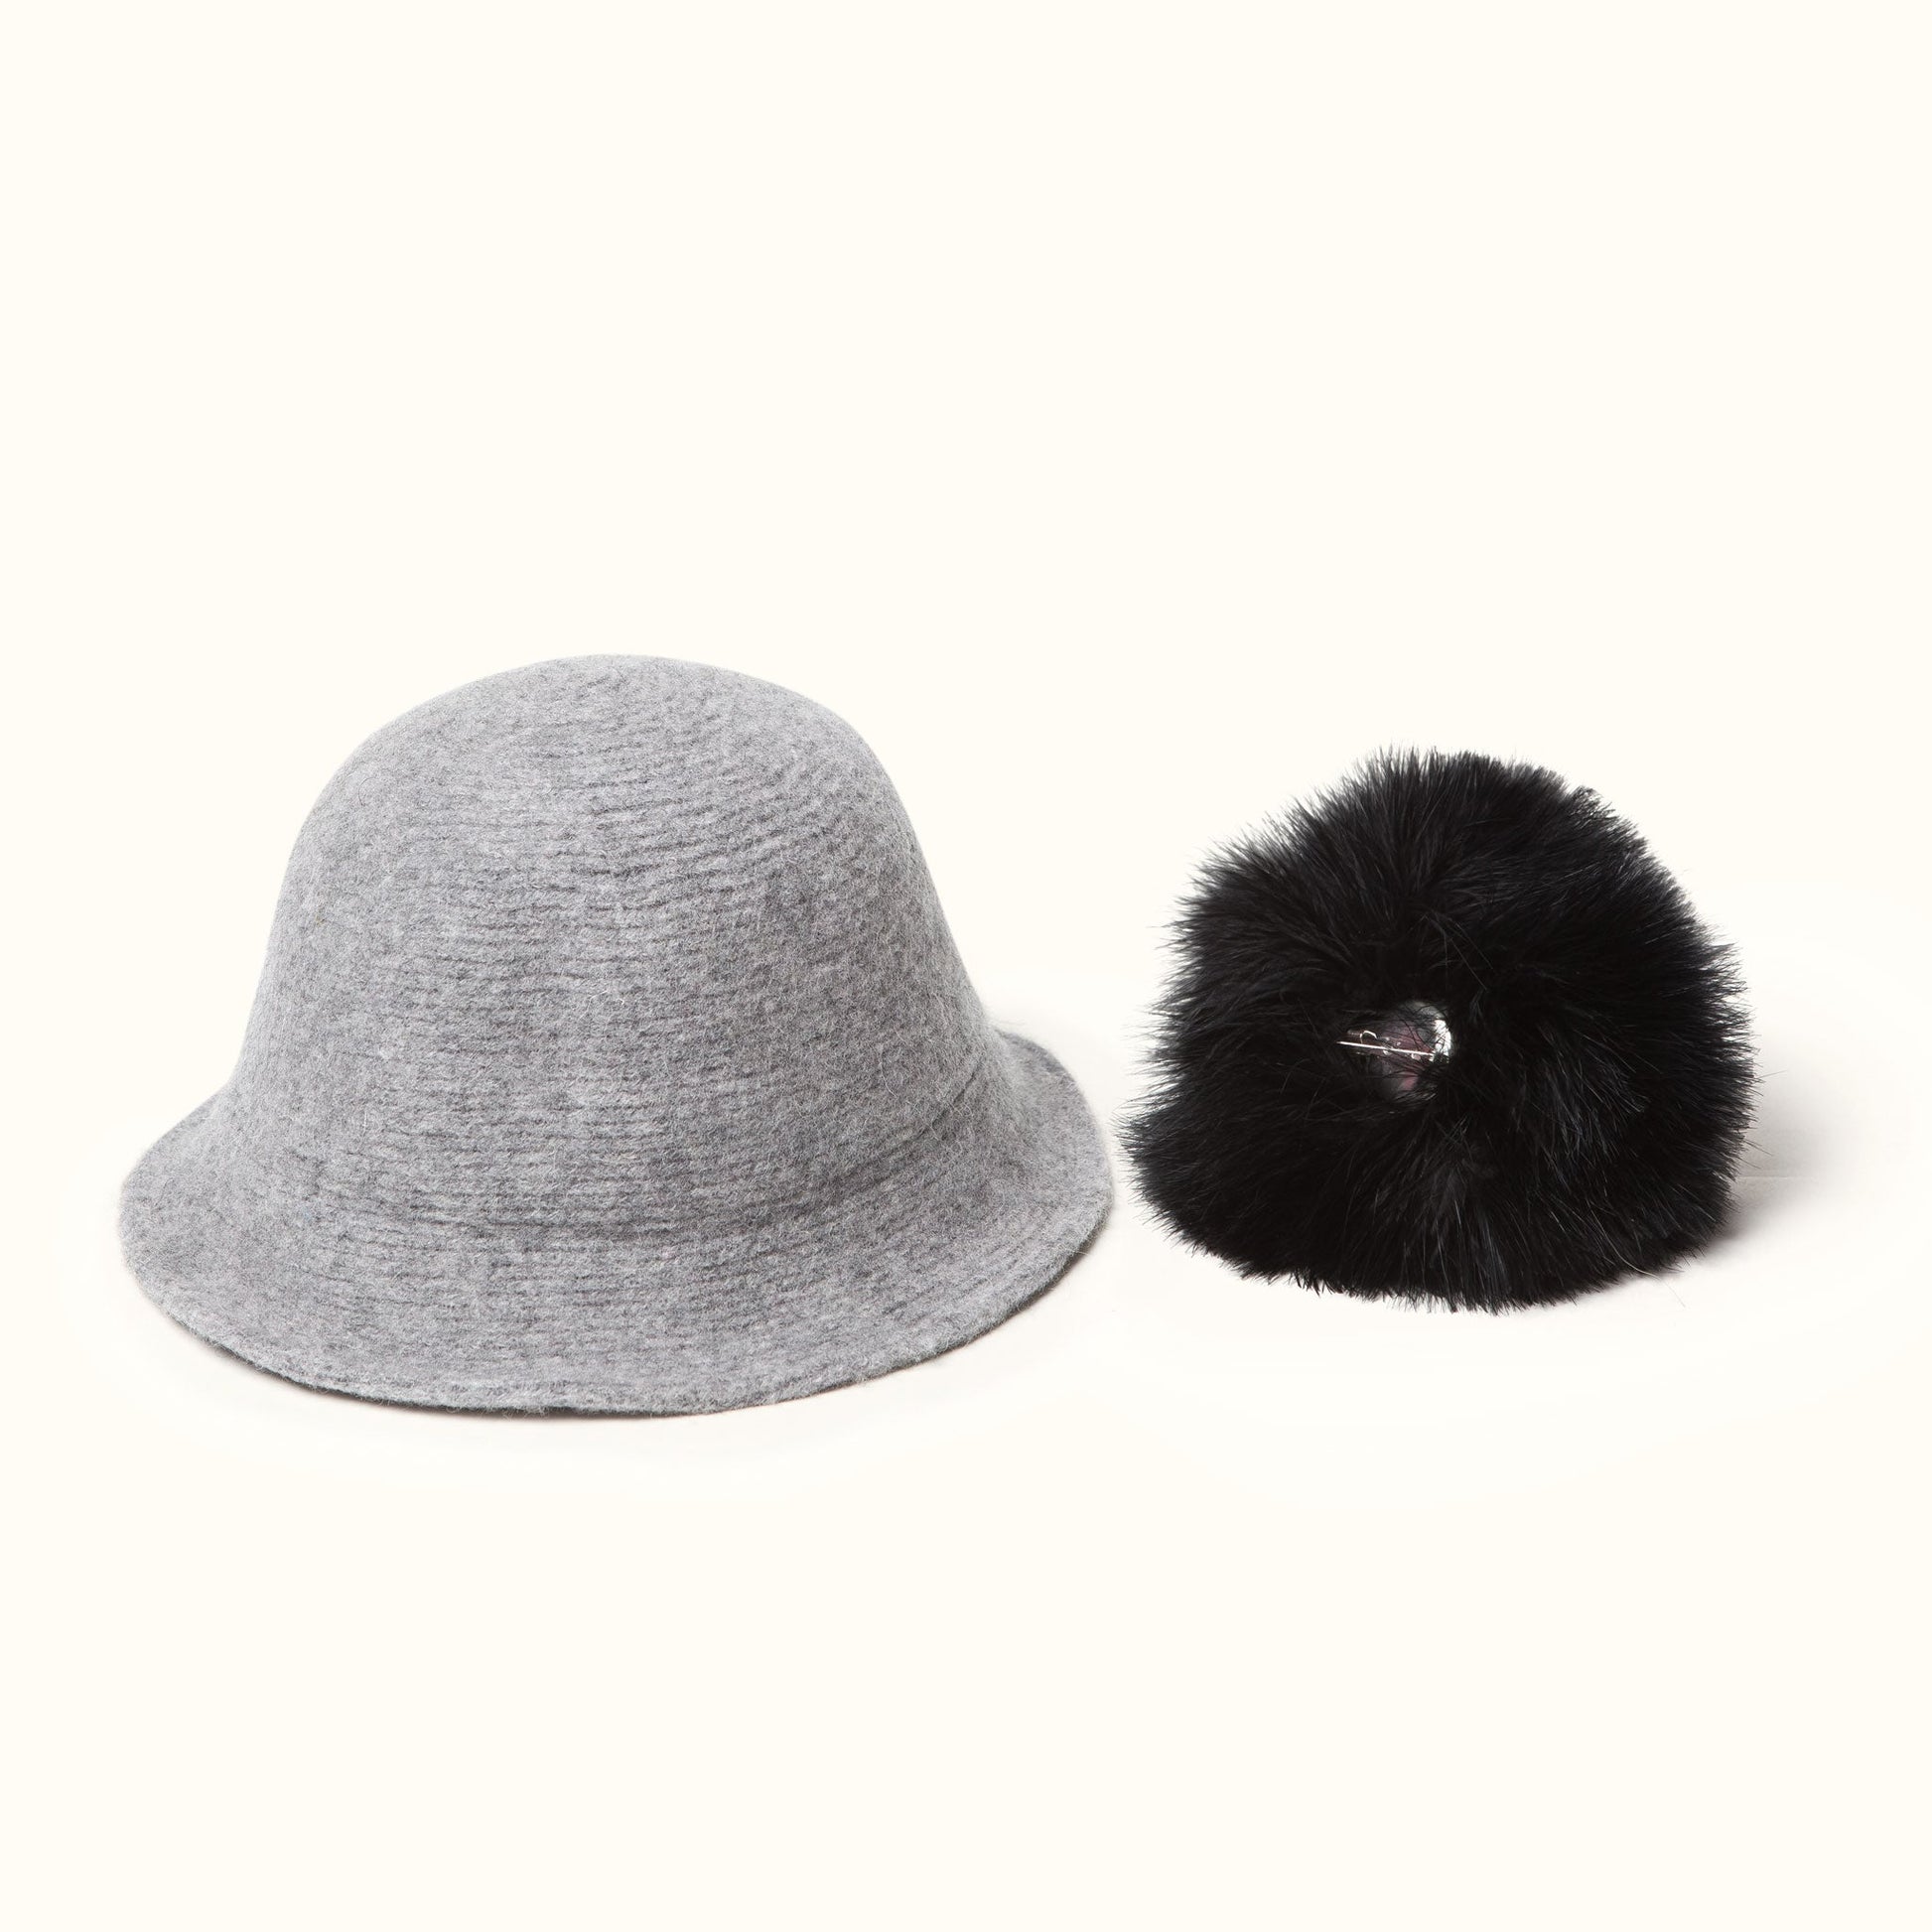 Pom Pom Wool Cloche Hat Gray detachable pom pom